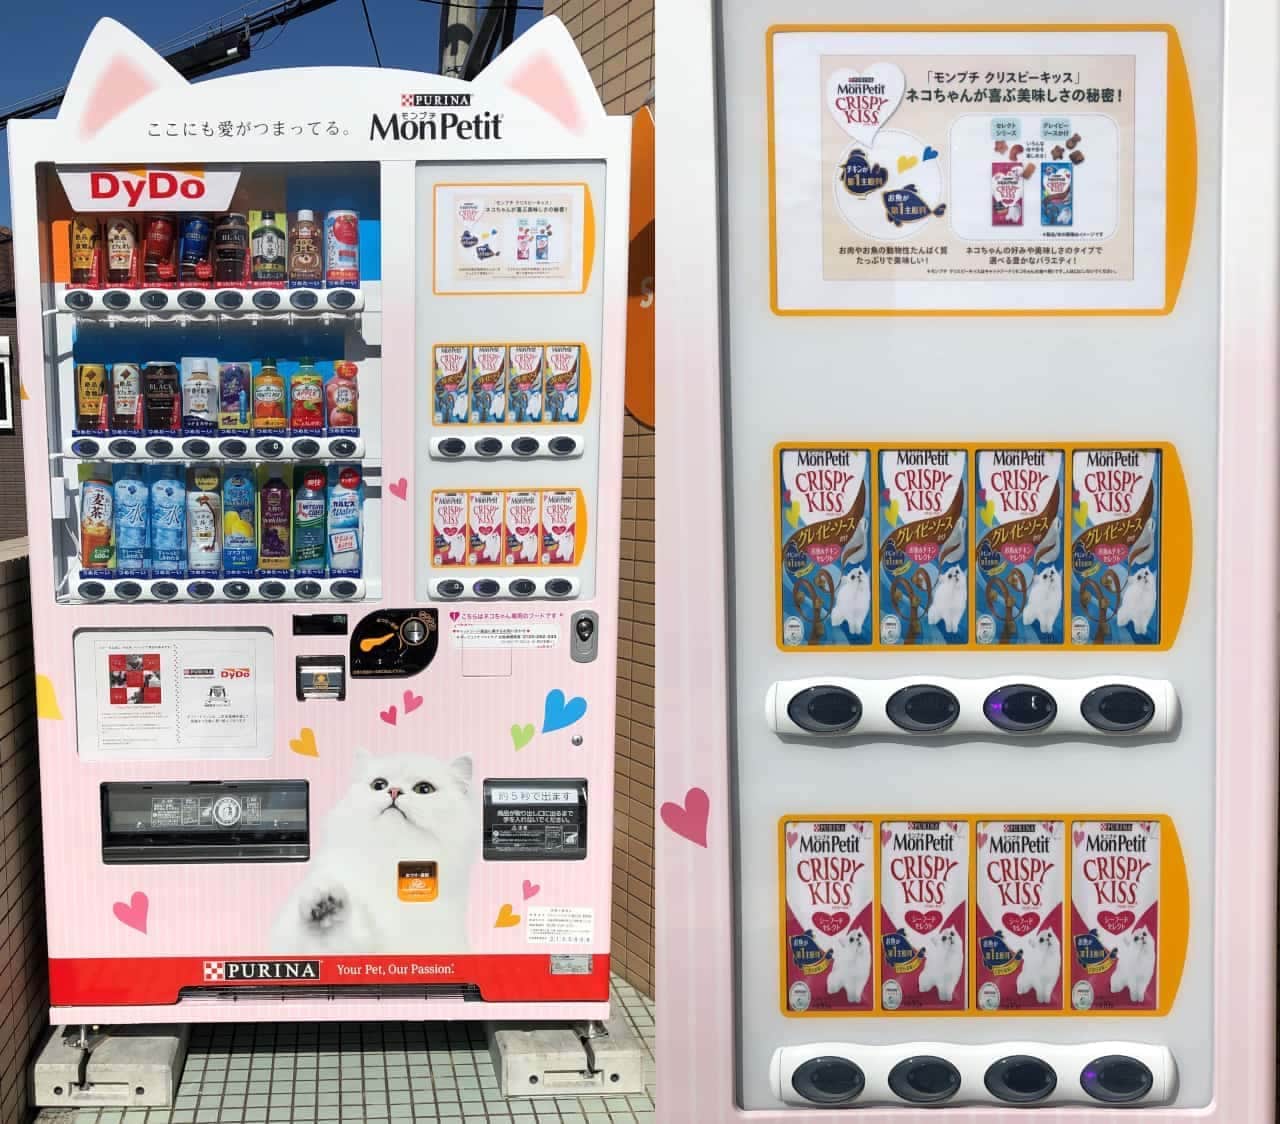 Daido Drinko "Cat vending machine